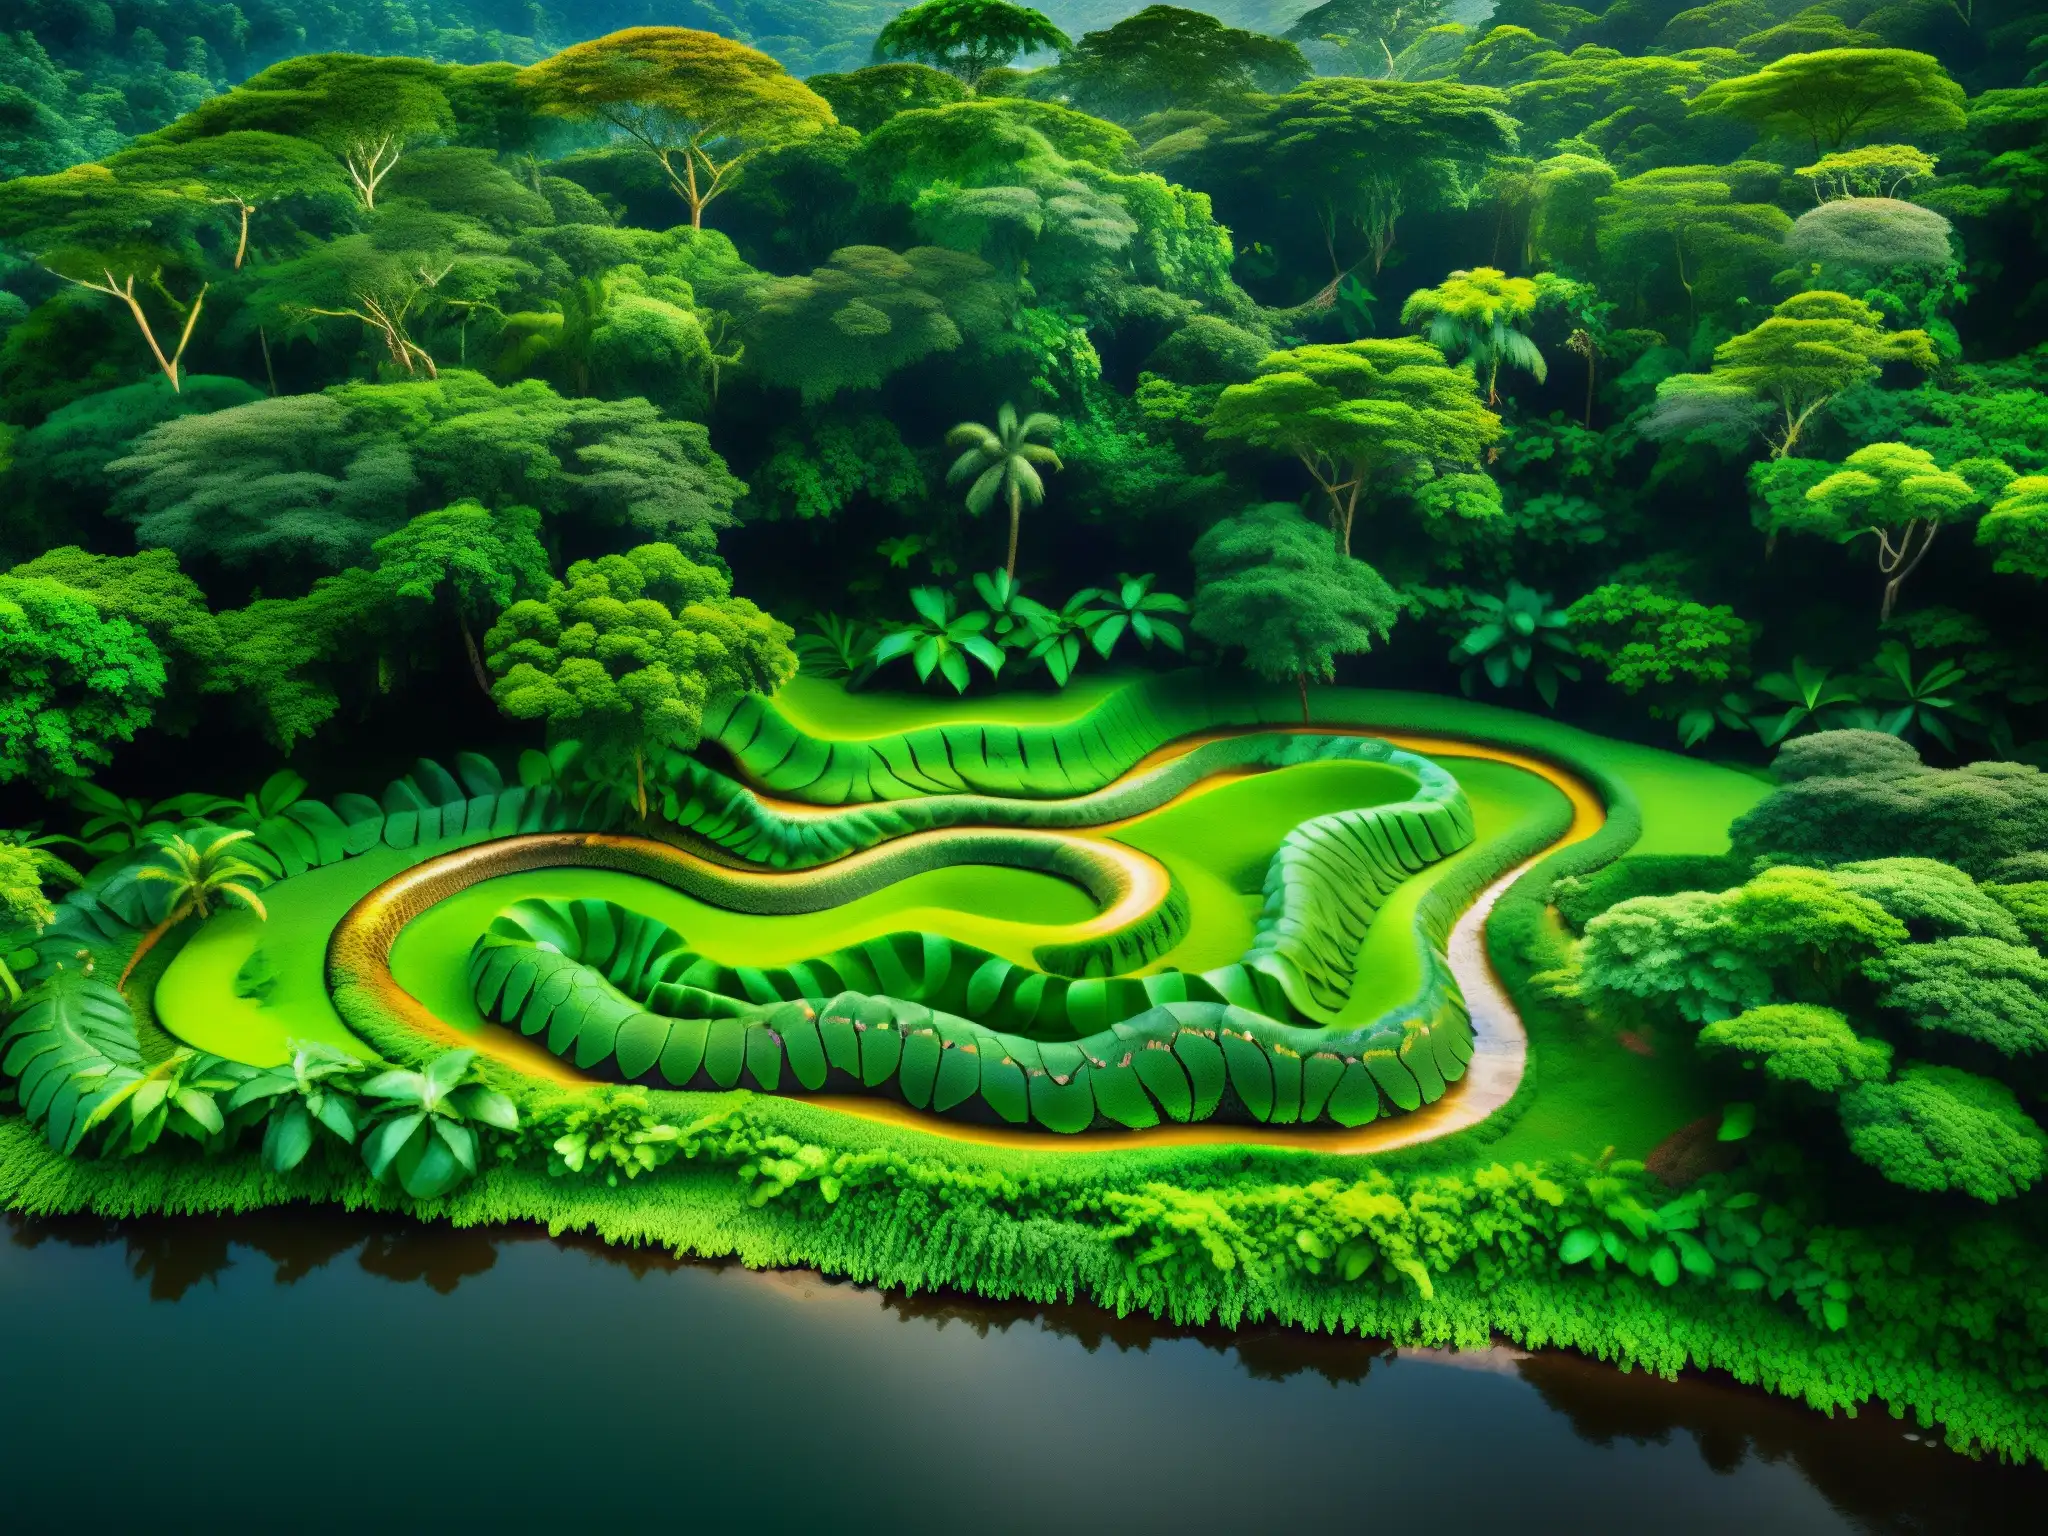 Majestuoso mito serpiente siete cabezas Amazonas envuelto en exuberante selva y río serpenteante, evocando misterio y encanto